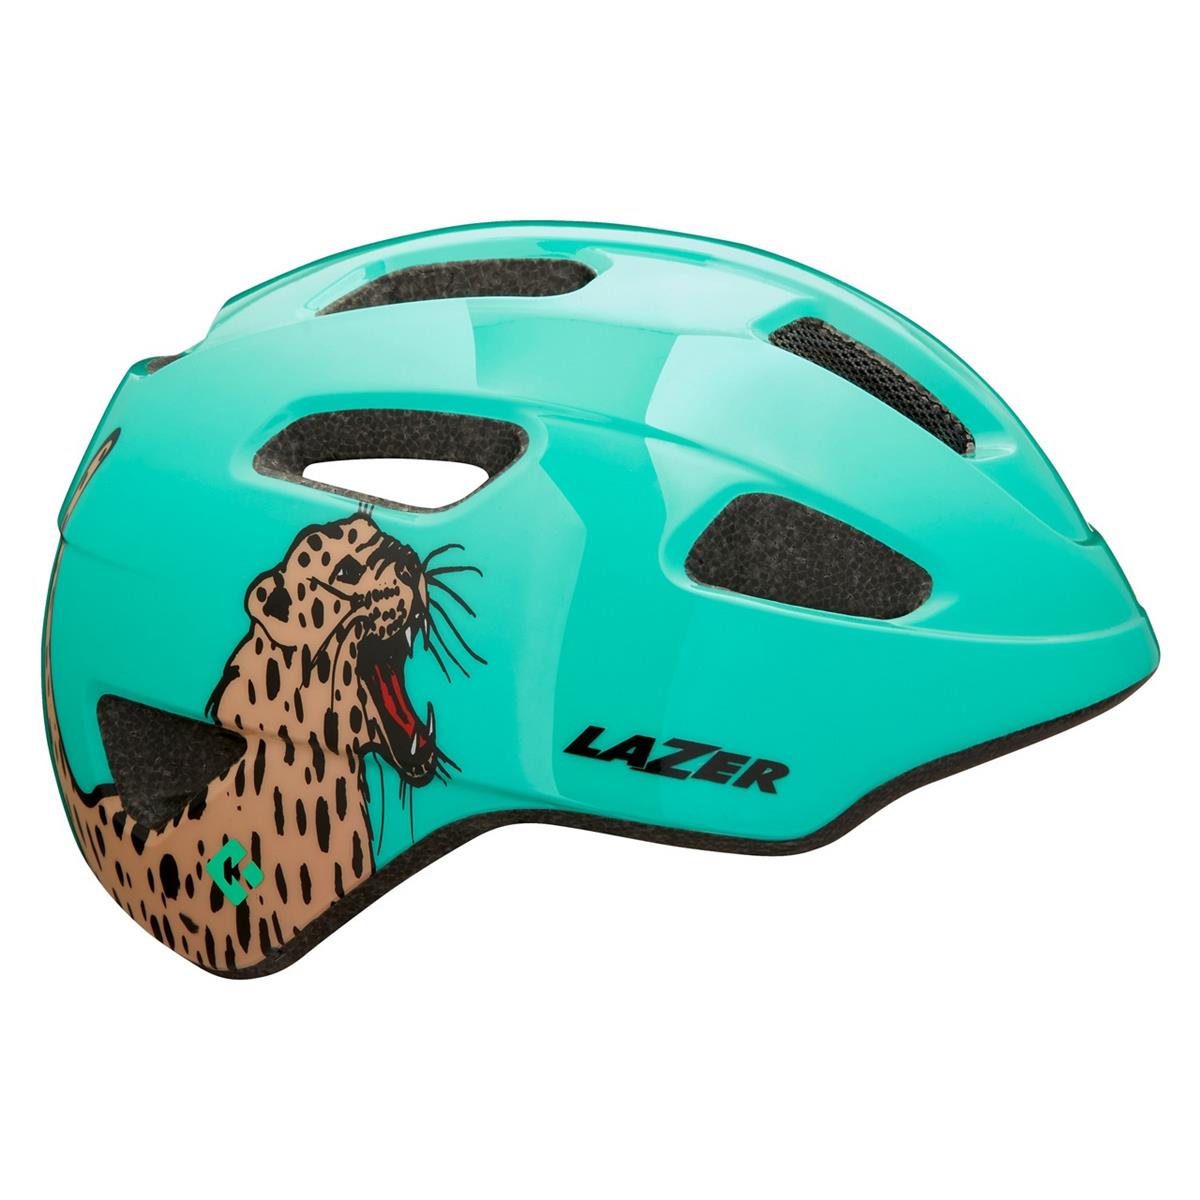 Nutz Kids Helmet KinetiCore CE Roaring Cat Light Green One Size (50-56cm)